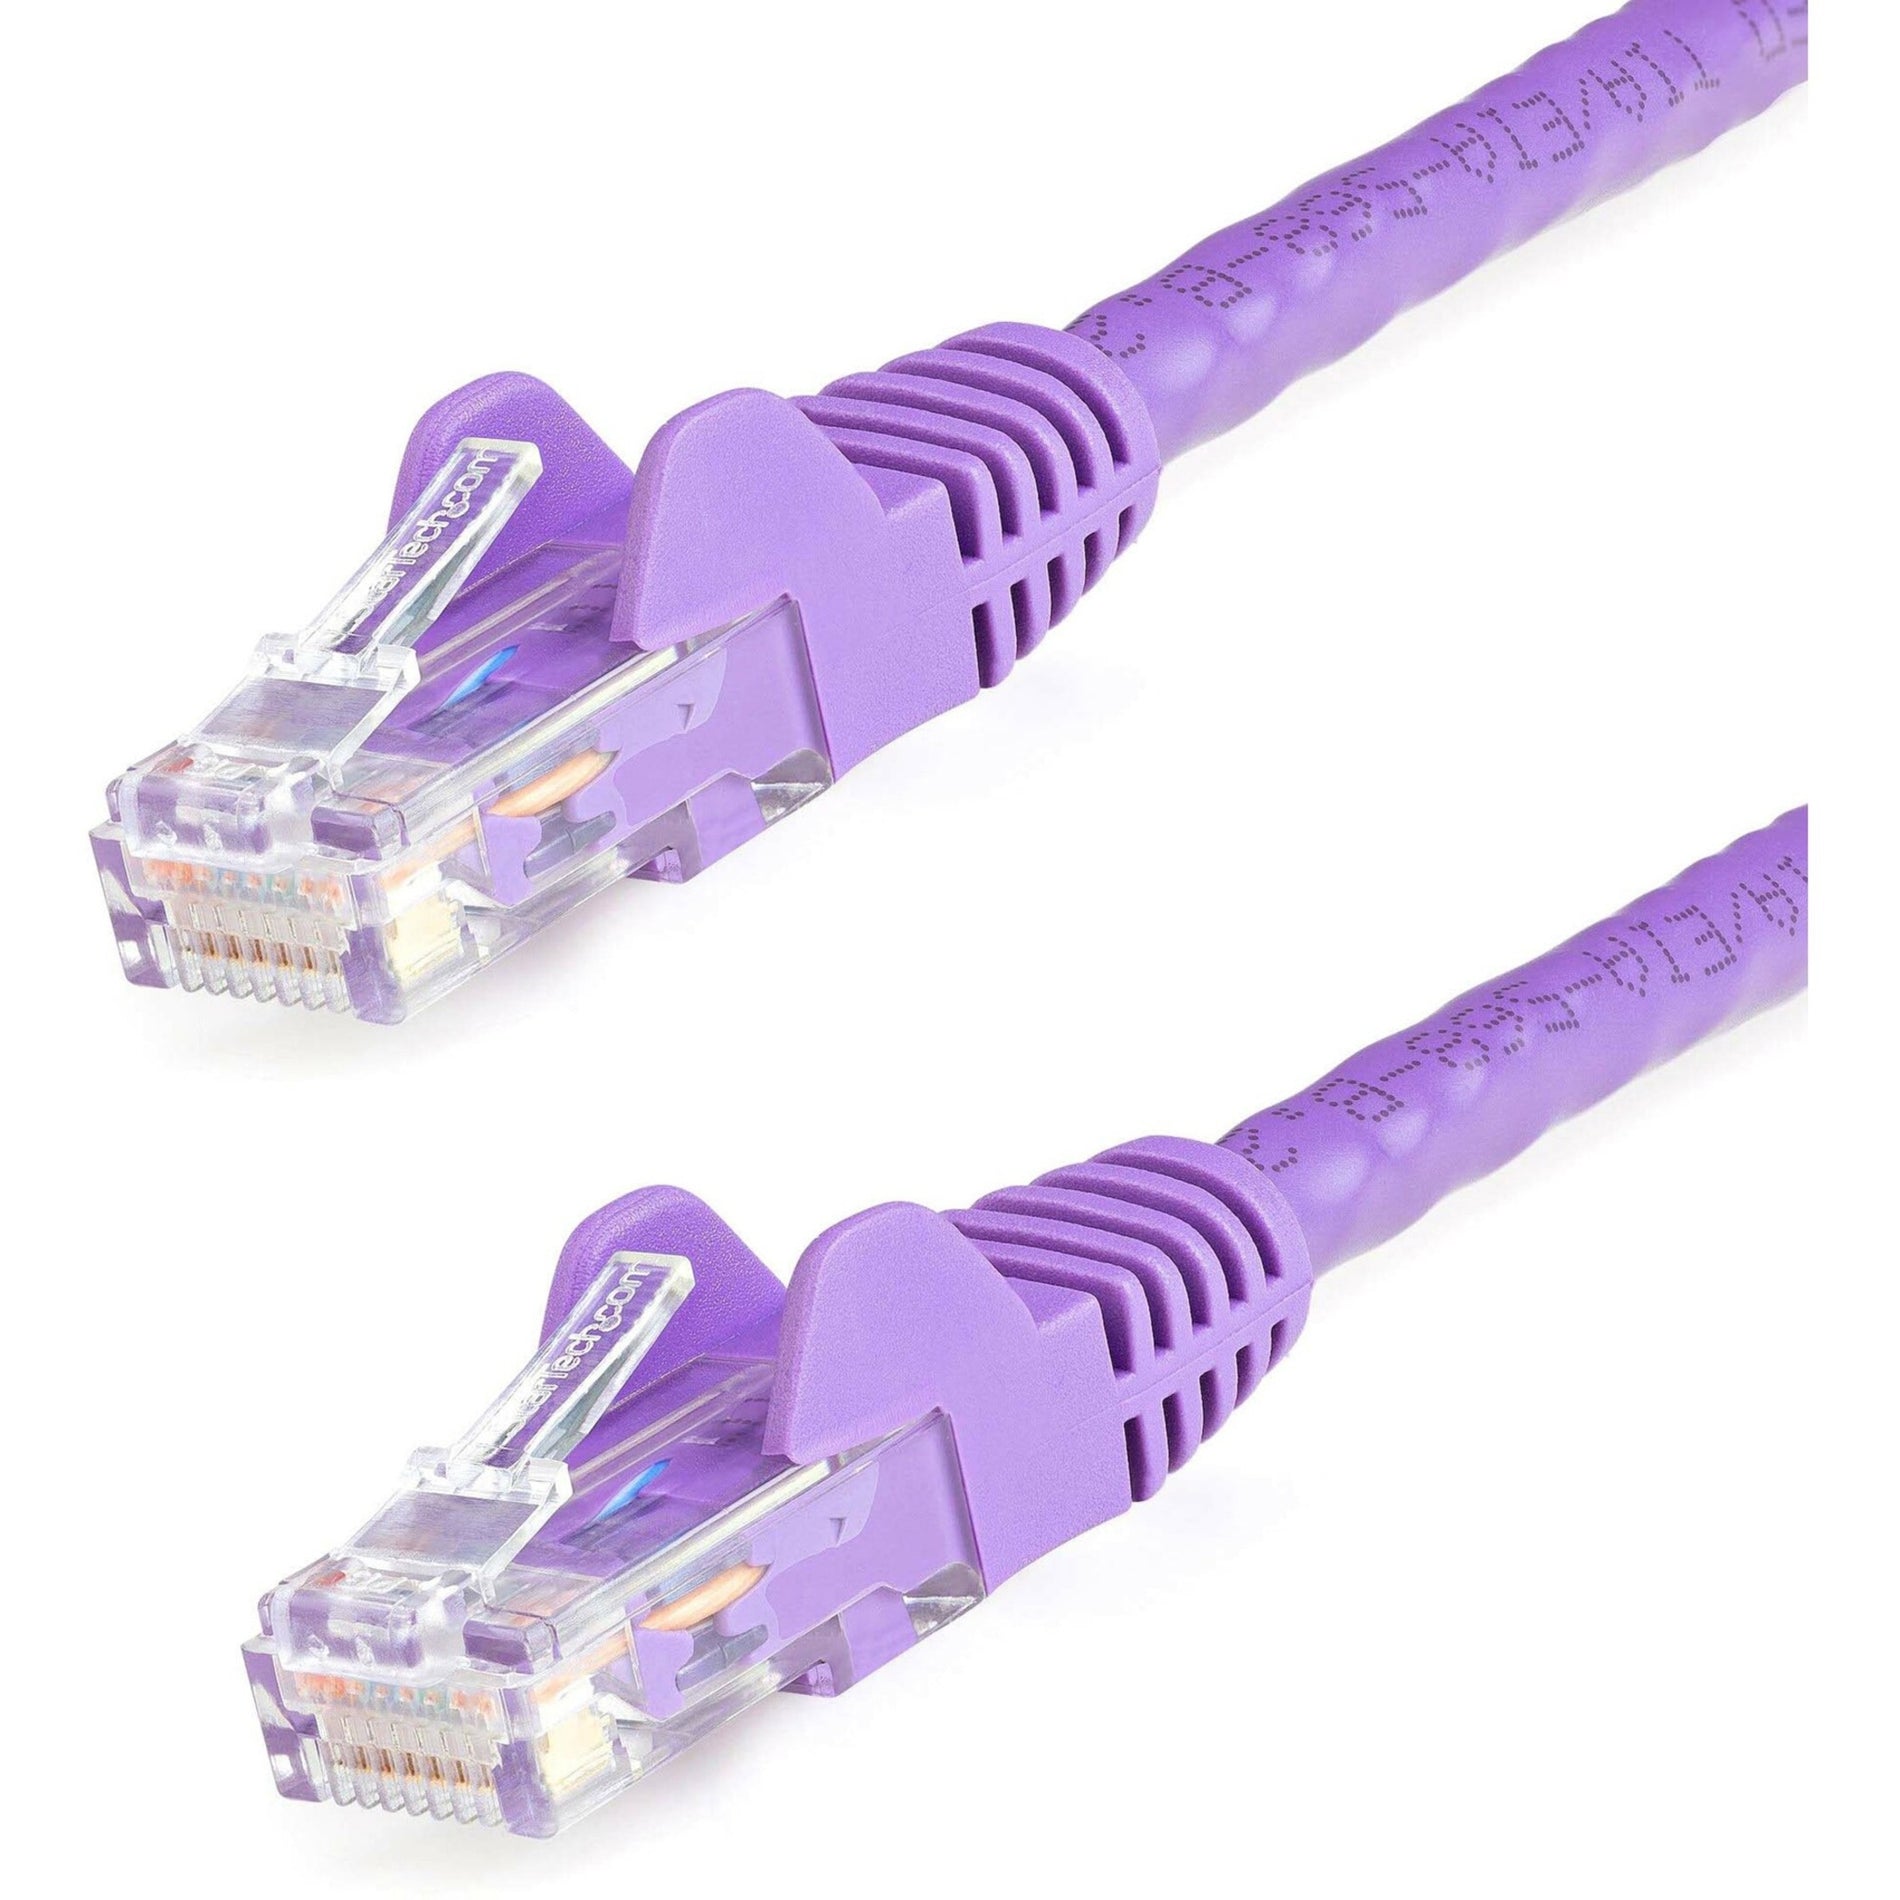 StarTech.com - StarTech.com N6PATCH12PL Cat6 Patch Cable 12ft Purple Ethernet Cable with Snagless RJ45 Connectors